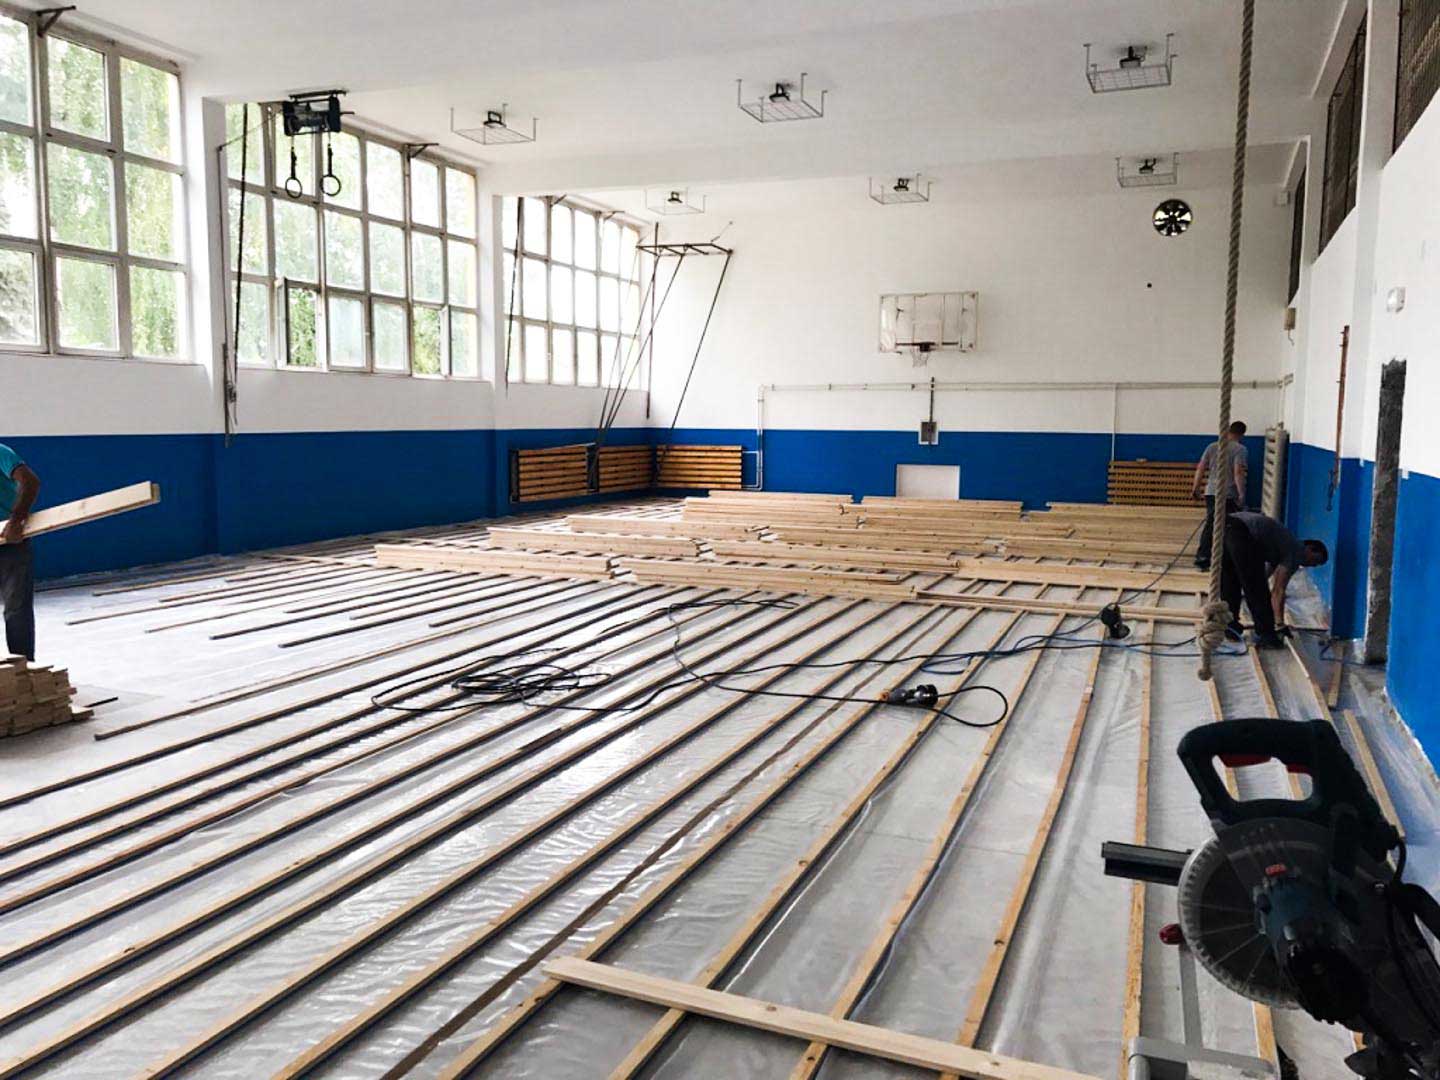 Rekonstrukcija fiskulturnog bloka ekonomske škole u Valjevu